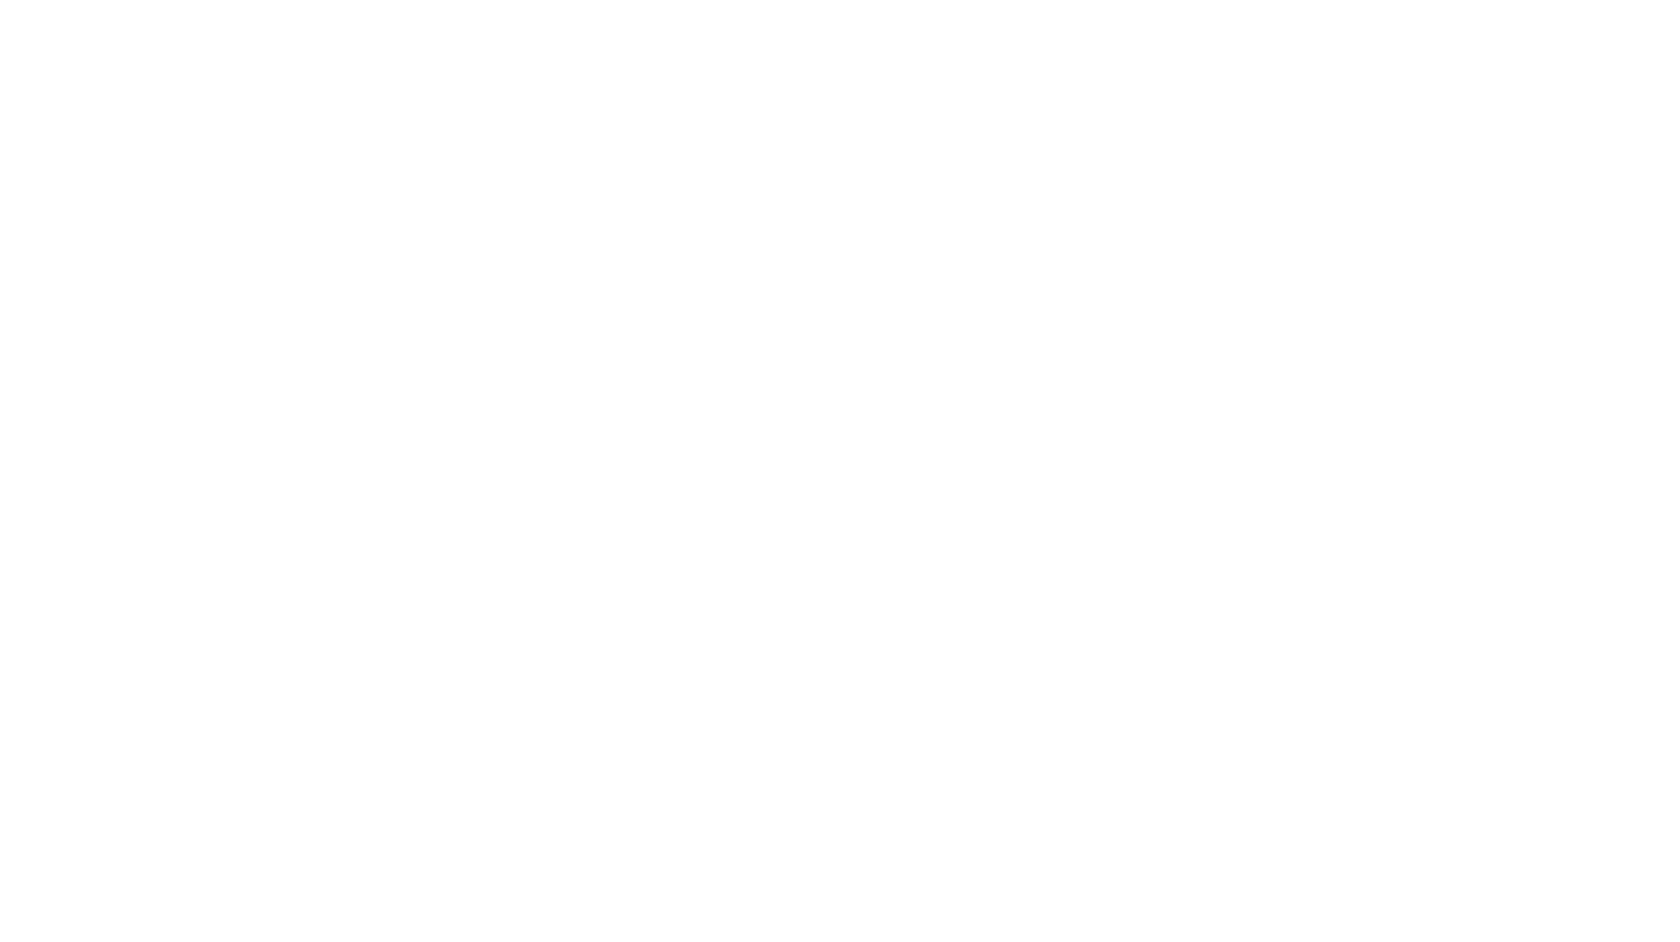 Товарный знак, по-простому логотип, созданный для юридического центра Явправе. Простой и понятный знак хорошо читается даже в favicon на веб-сайте.